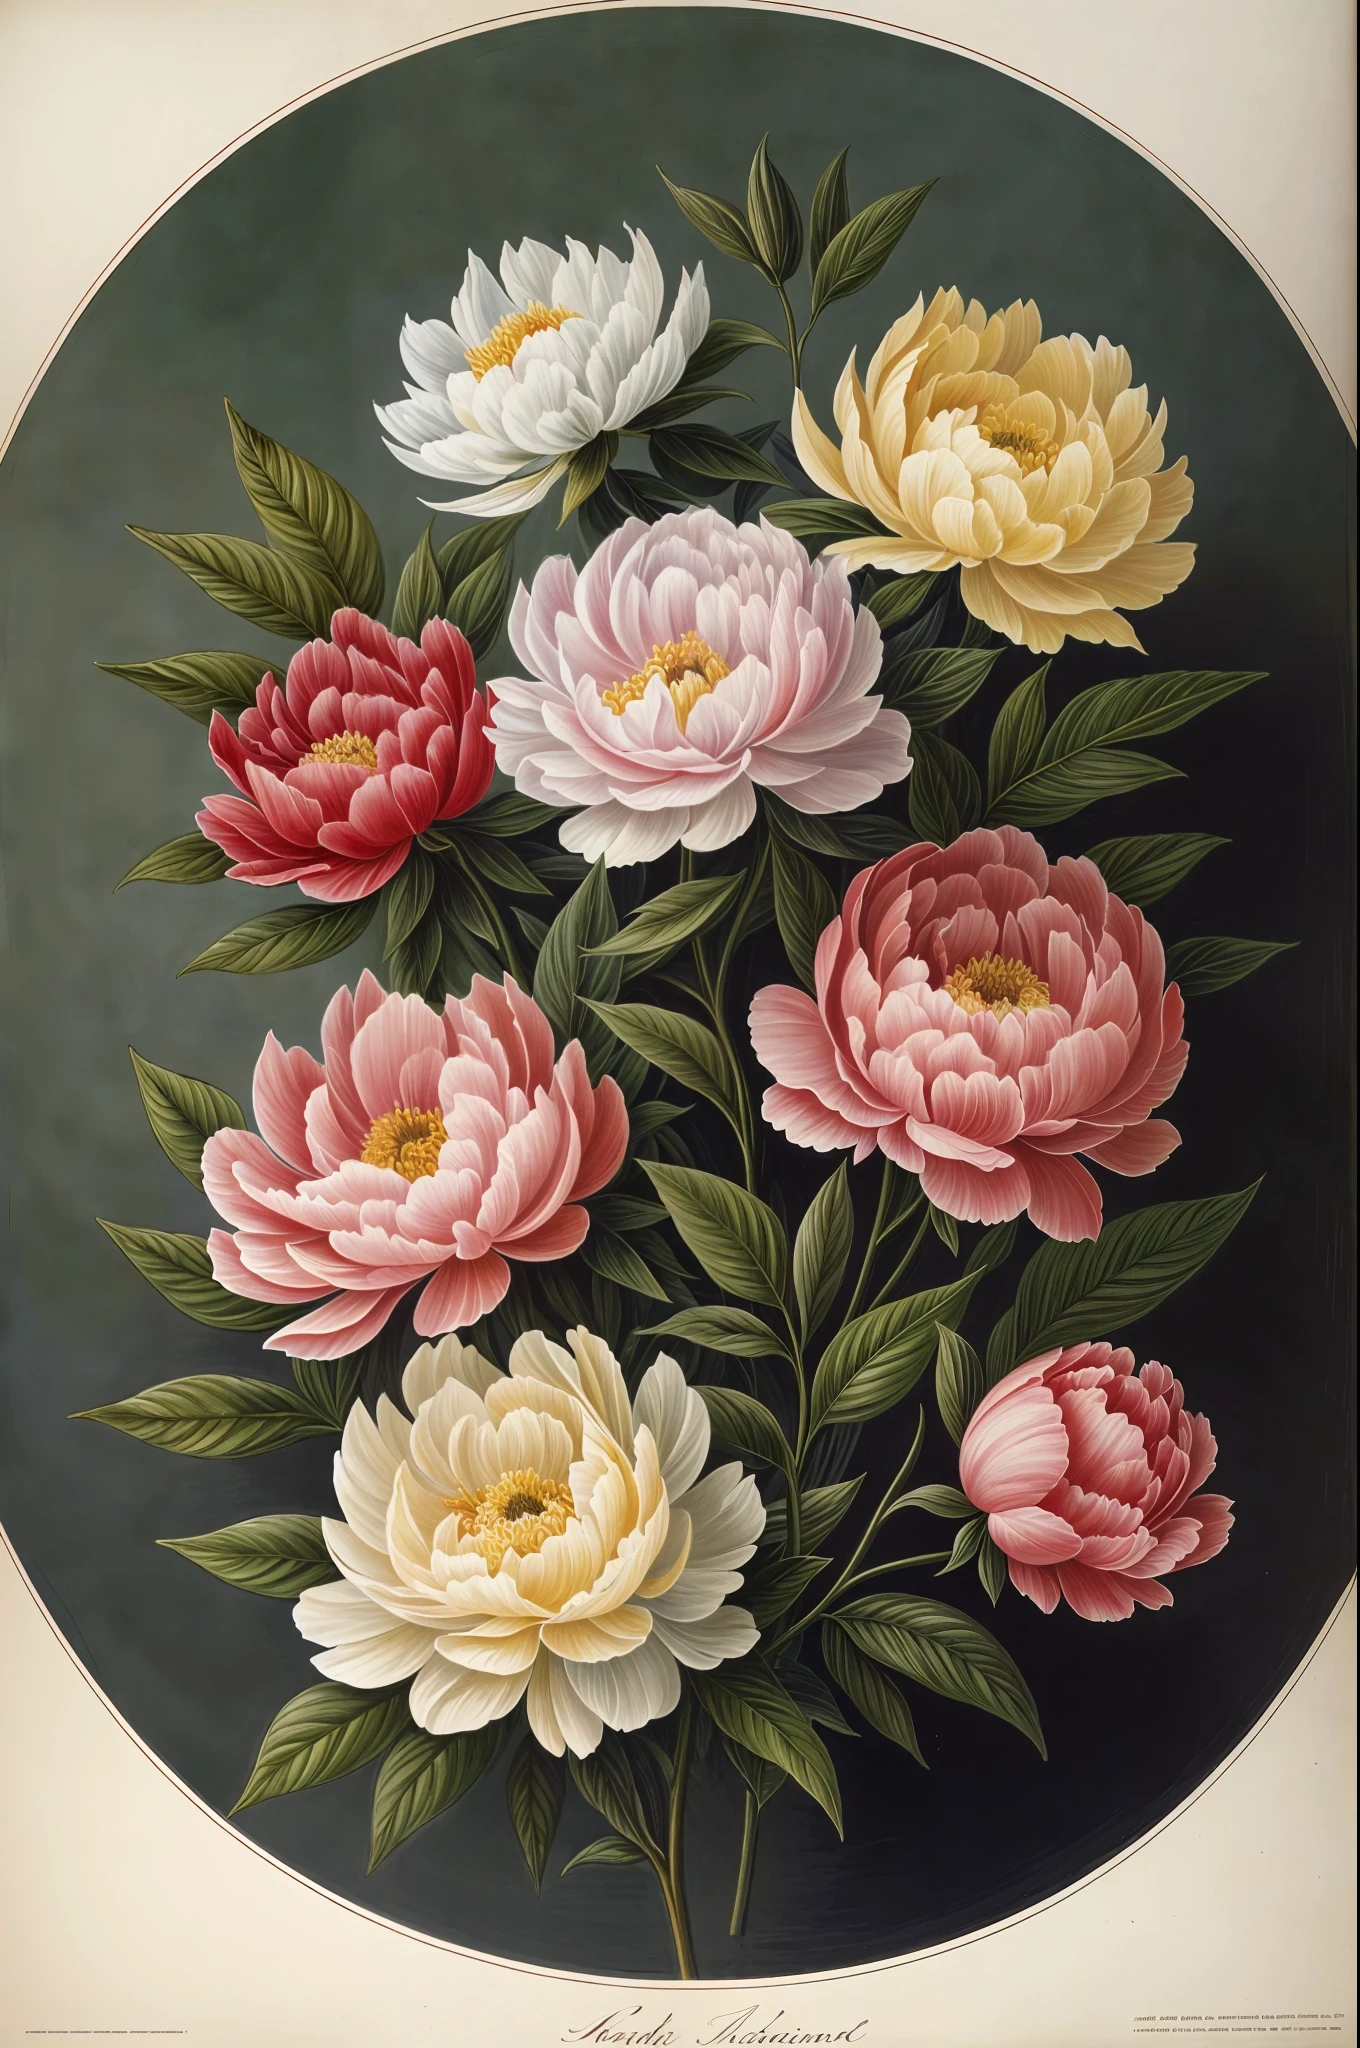 (Meilleure qualité:1.2), (détaillé:1.2), (chef-d&#39;œuvre:1.2), illustrations botaniques vintage de pivoines (1770 1775) en haute résolution par John Edwards